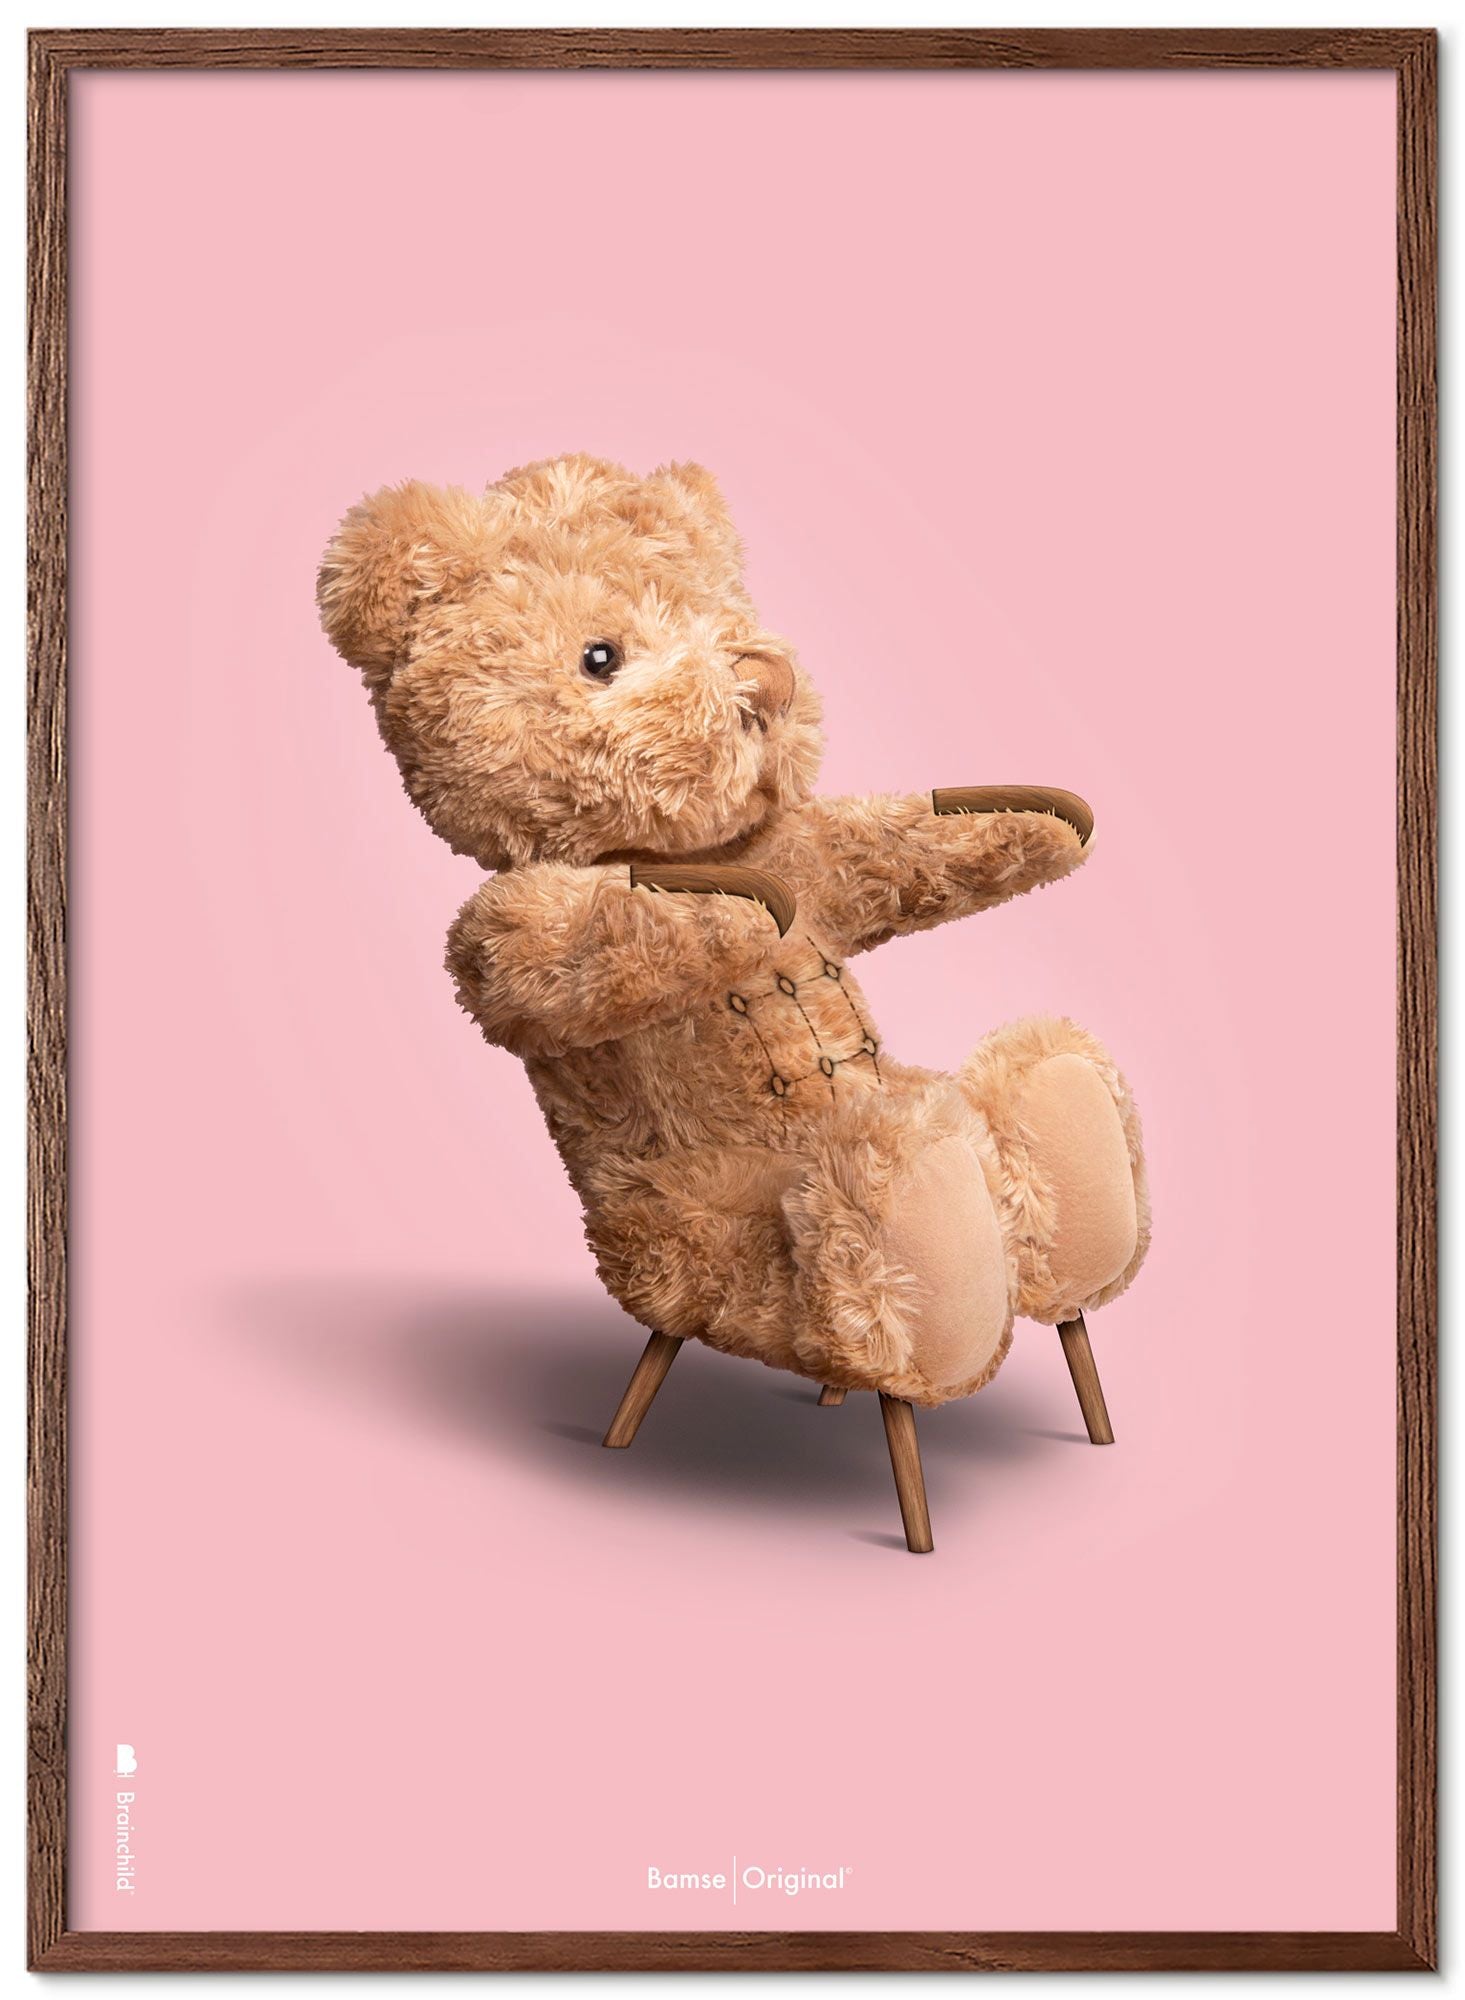 Marco de póster clásico de BrainChild Teddy Bear hecho de madera oscura Ram 30x40 cm, fondo rosa